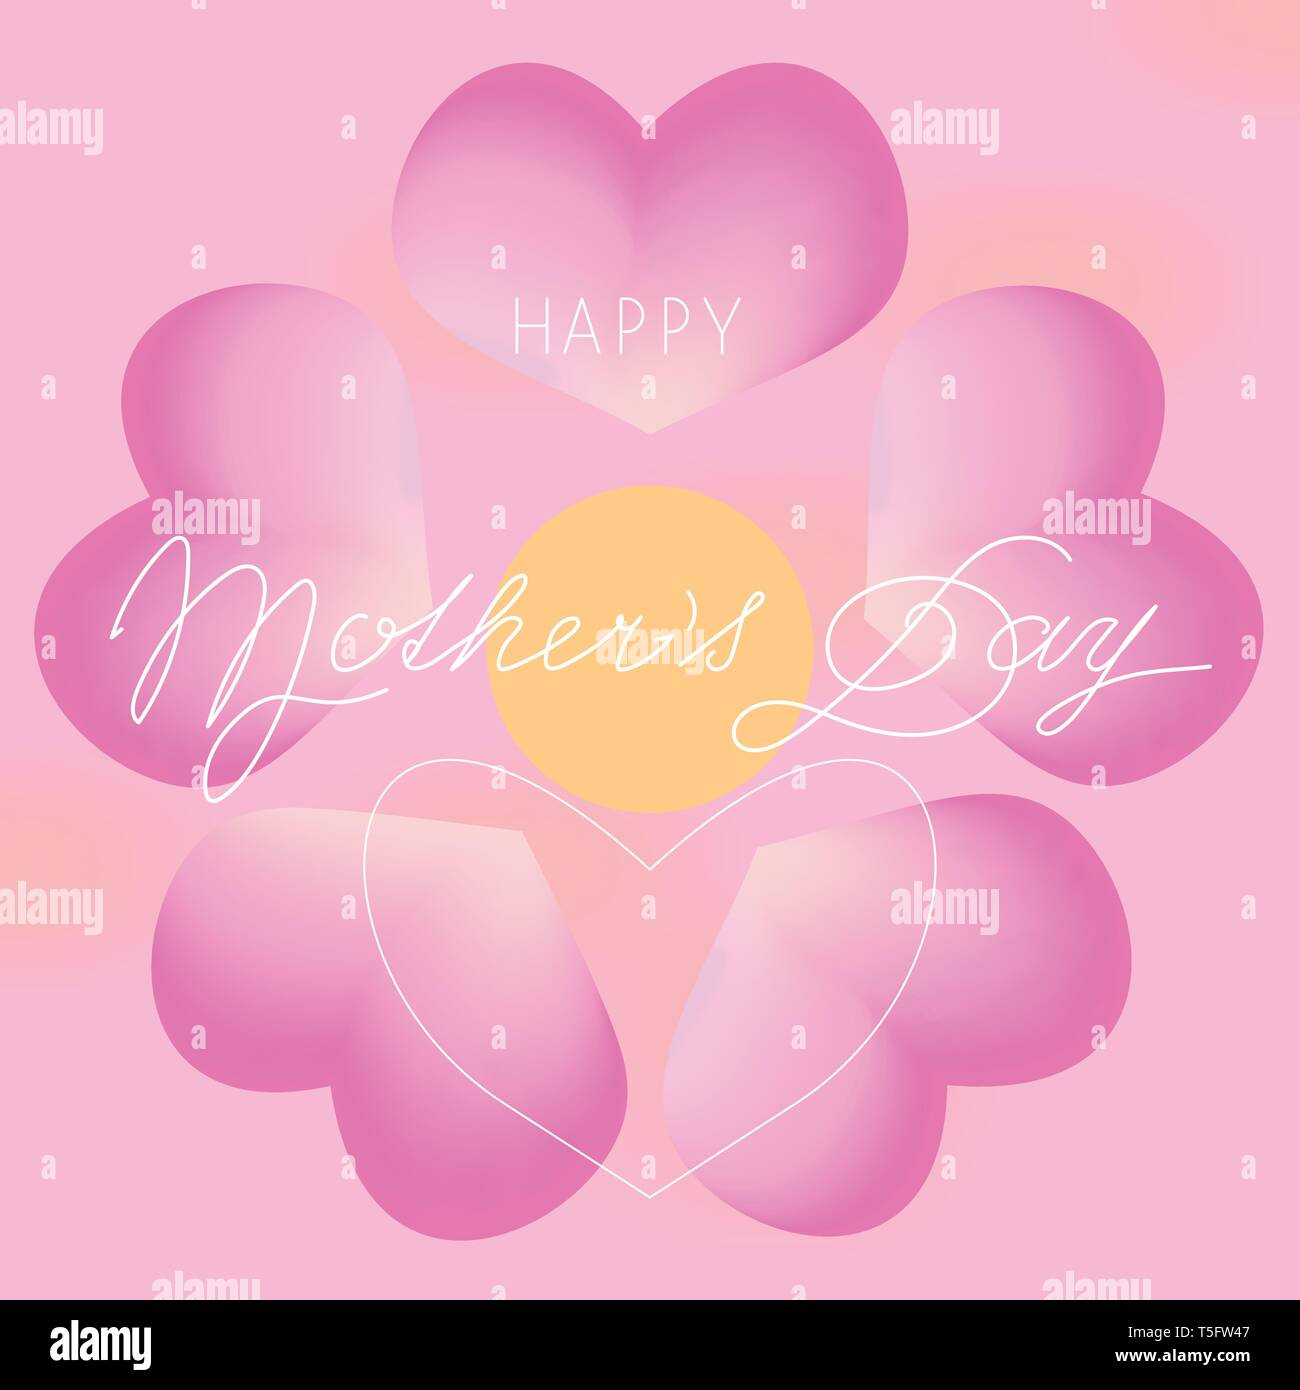 Modèle vecteur coloré fleur coeur logo. Concept créatif. L'harmonie des couleurs de fond. Happy mothers day card Illustration de Vecteur